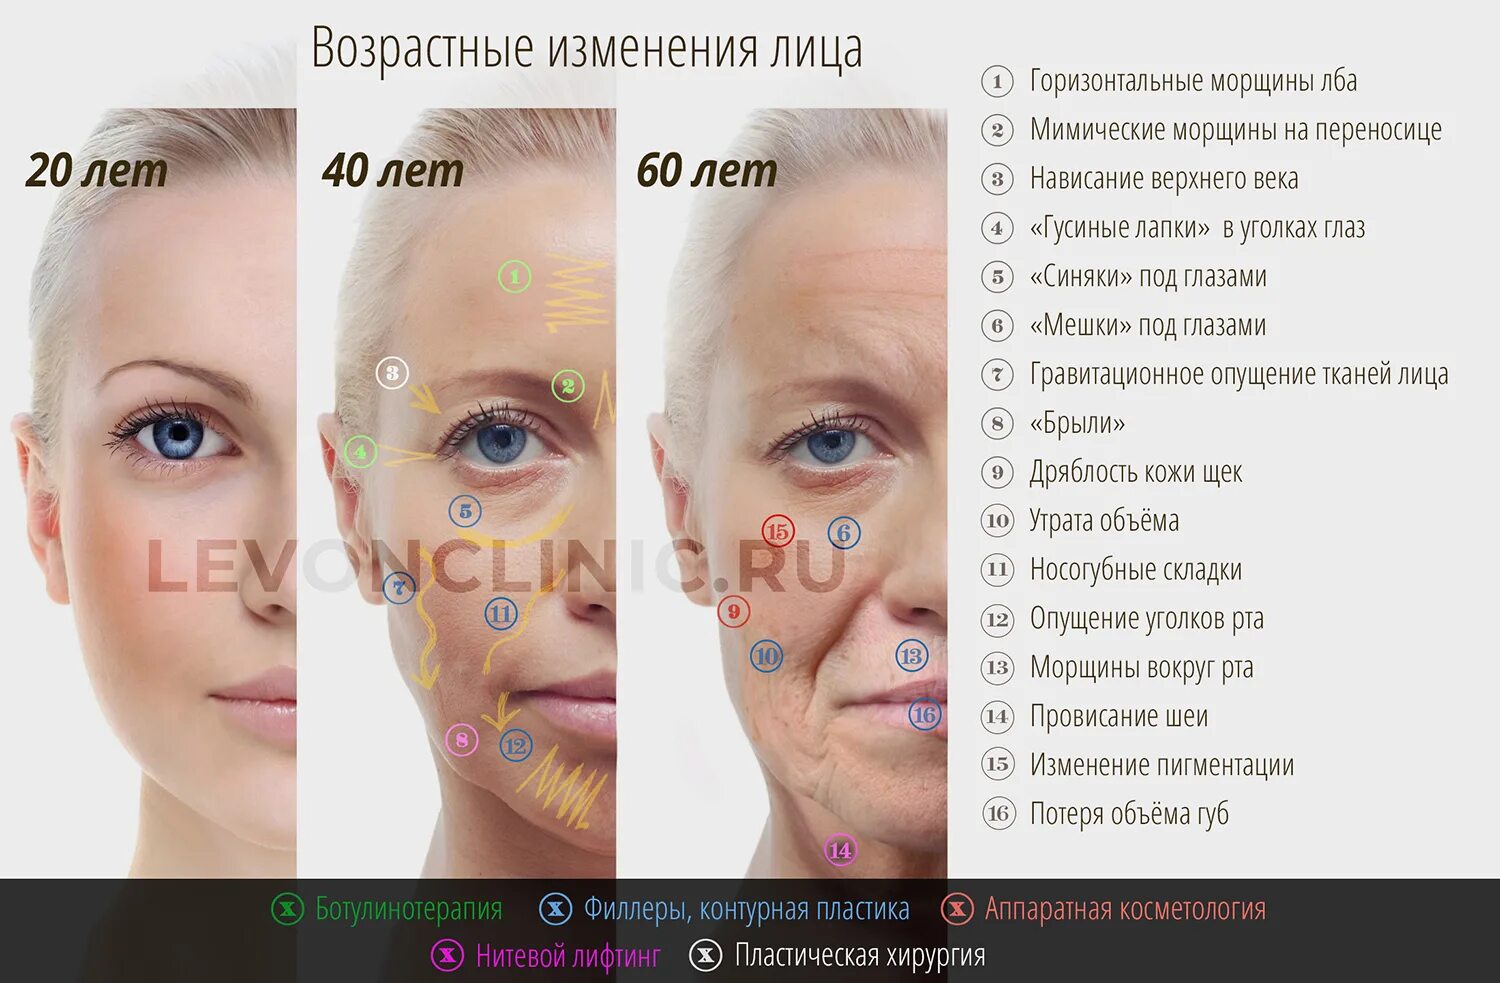 Возрастные изменения лица. Коррекция возрастных изменений кожи. Возрастные изменения кожи. Возрастные изменения лица у женщин. Возрастные изменения 40